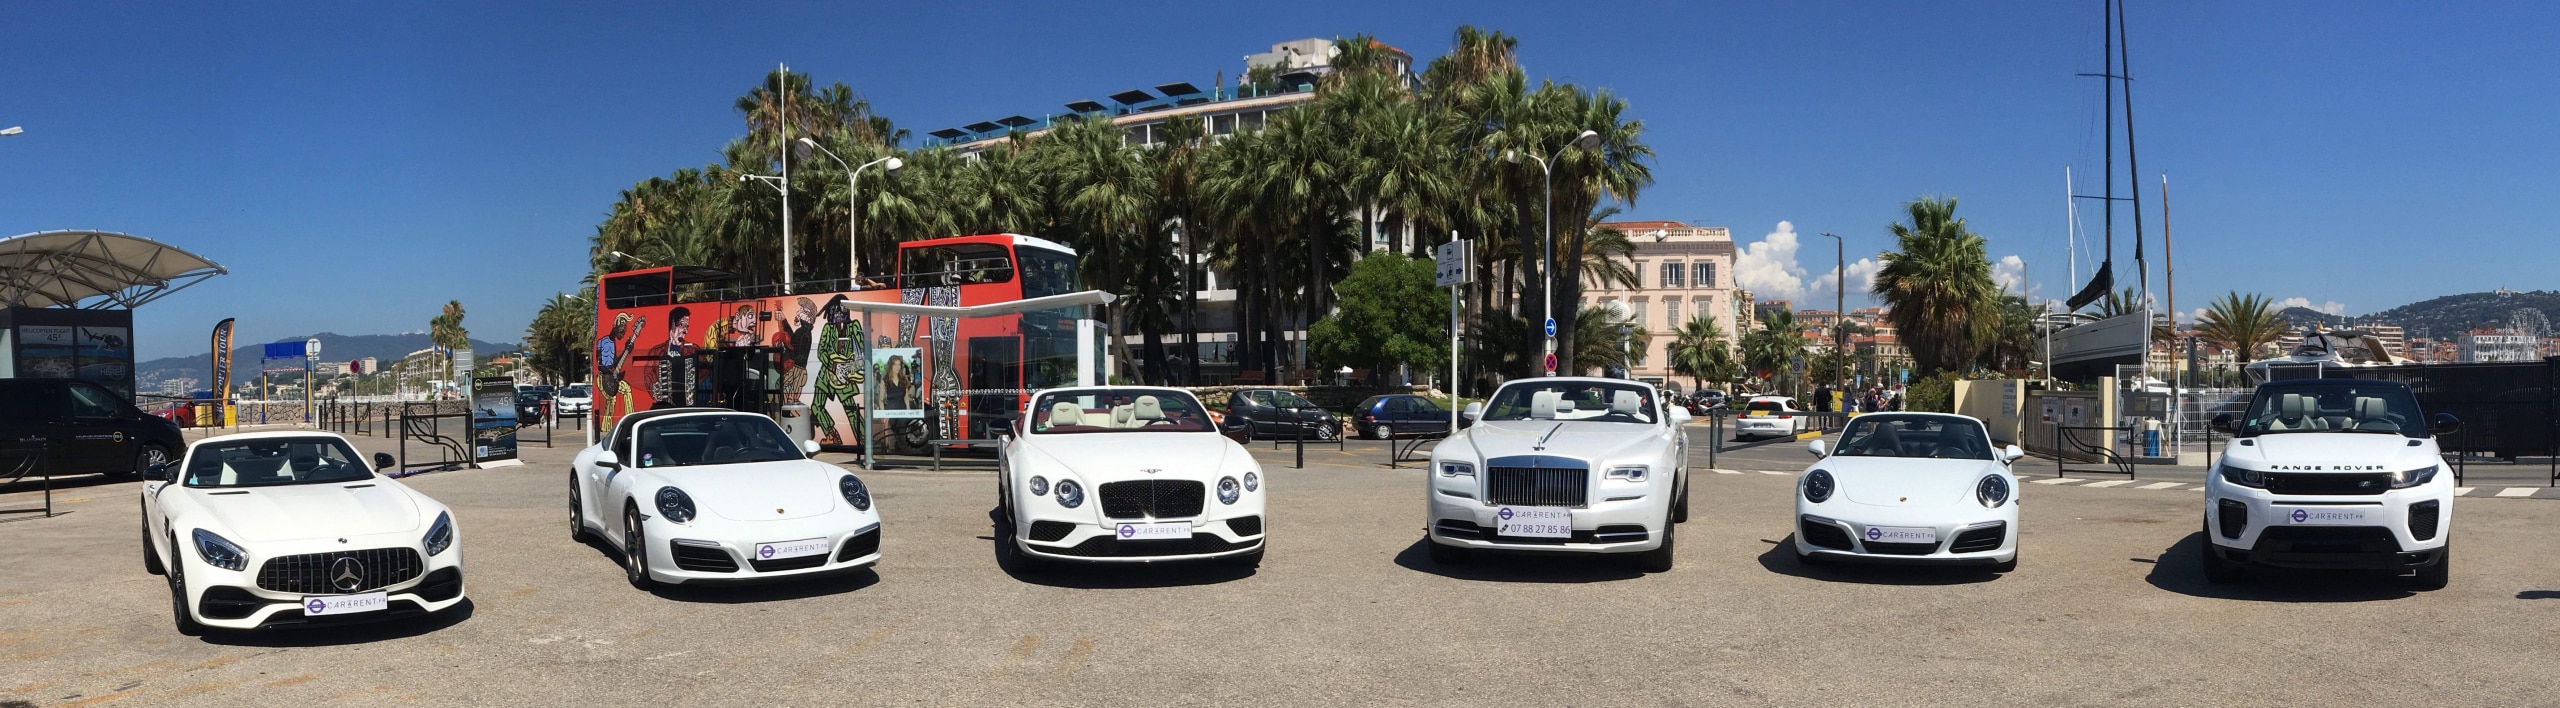 location de voiture de luxe à sainte-maxime, Location de voiture de sport sur la Côte d'azur, White-collection-Car4rent-Cannes